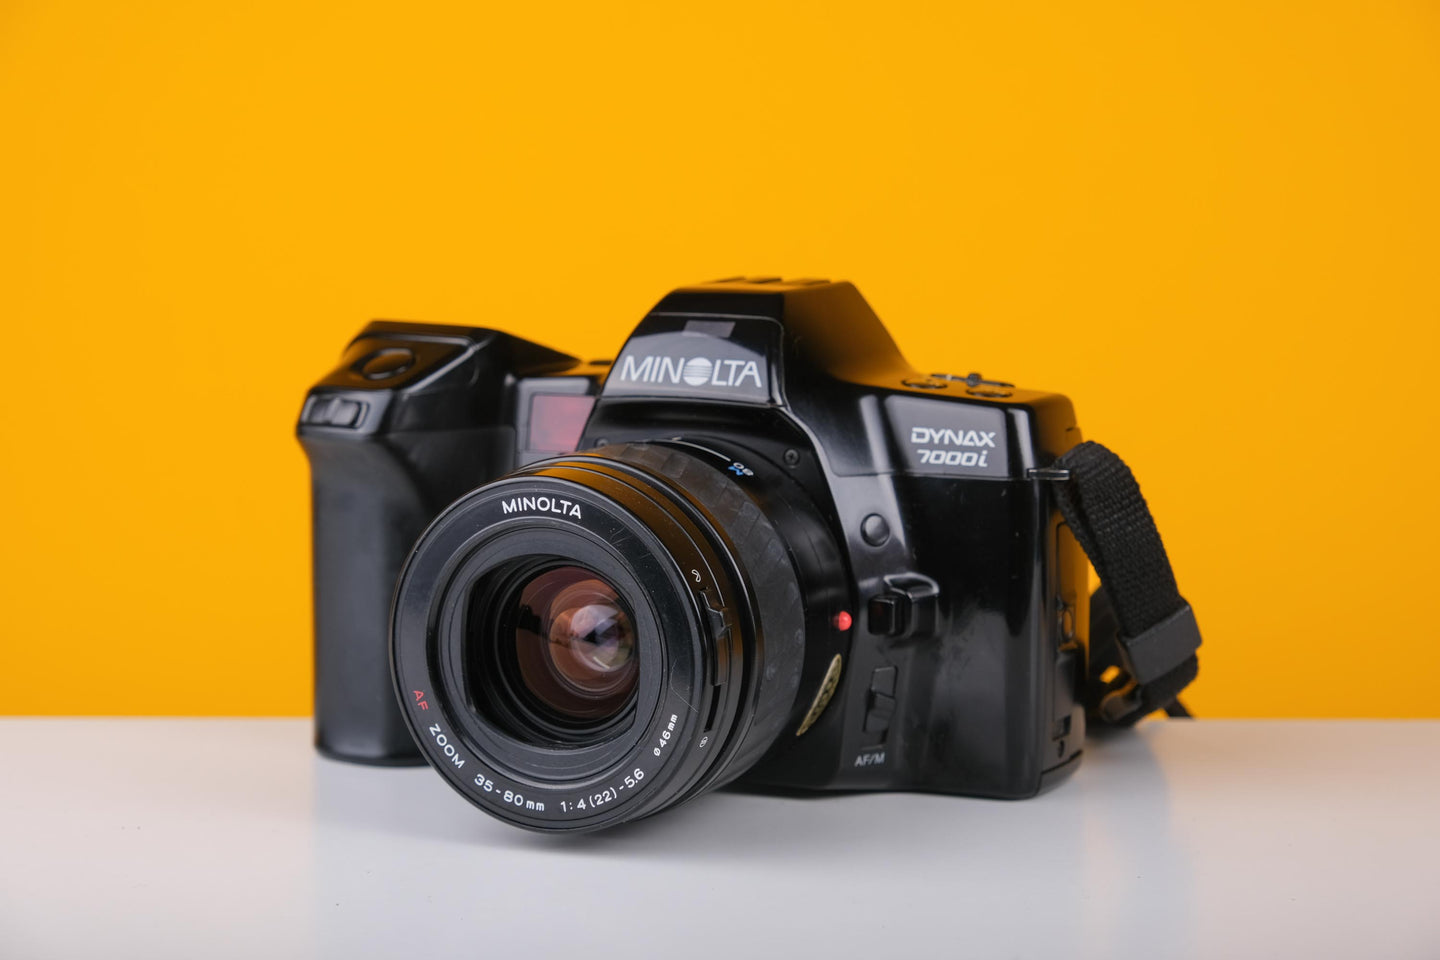 Minolta Dynax 7000i 35mm Film Camera with Minolta Zoom Lens 35-80mm f/4